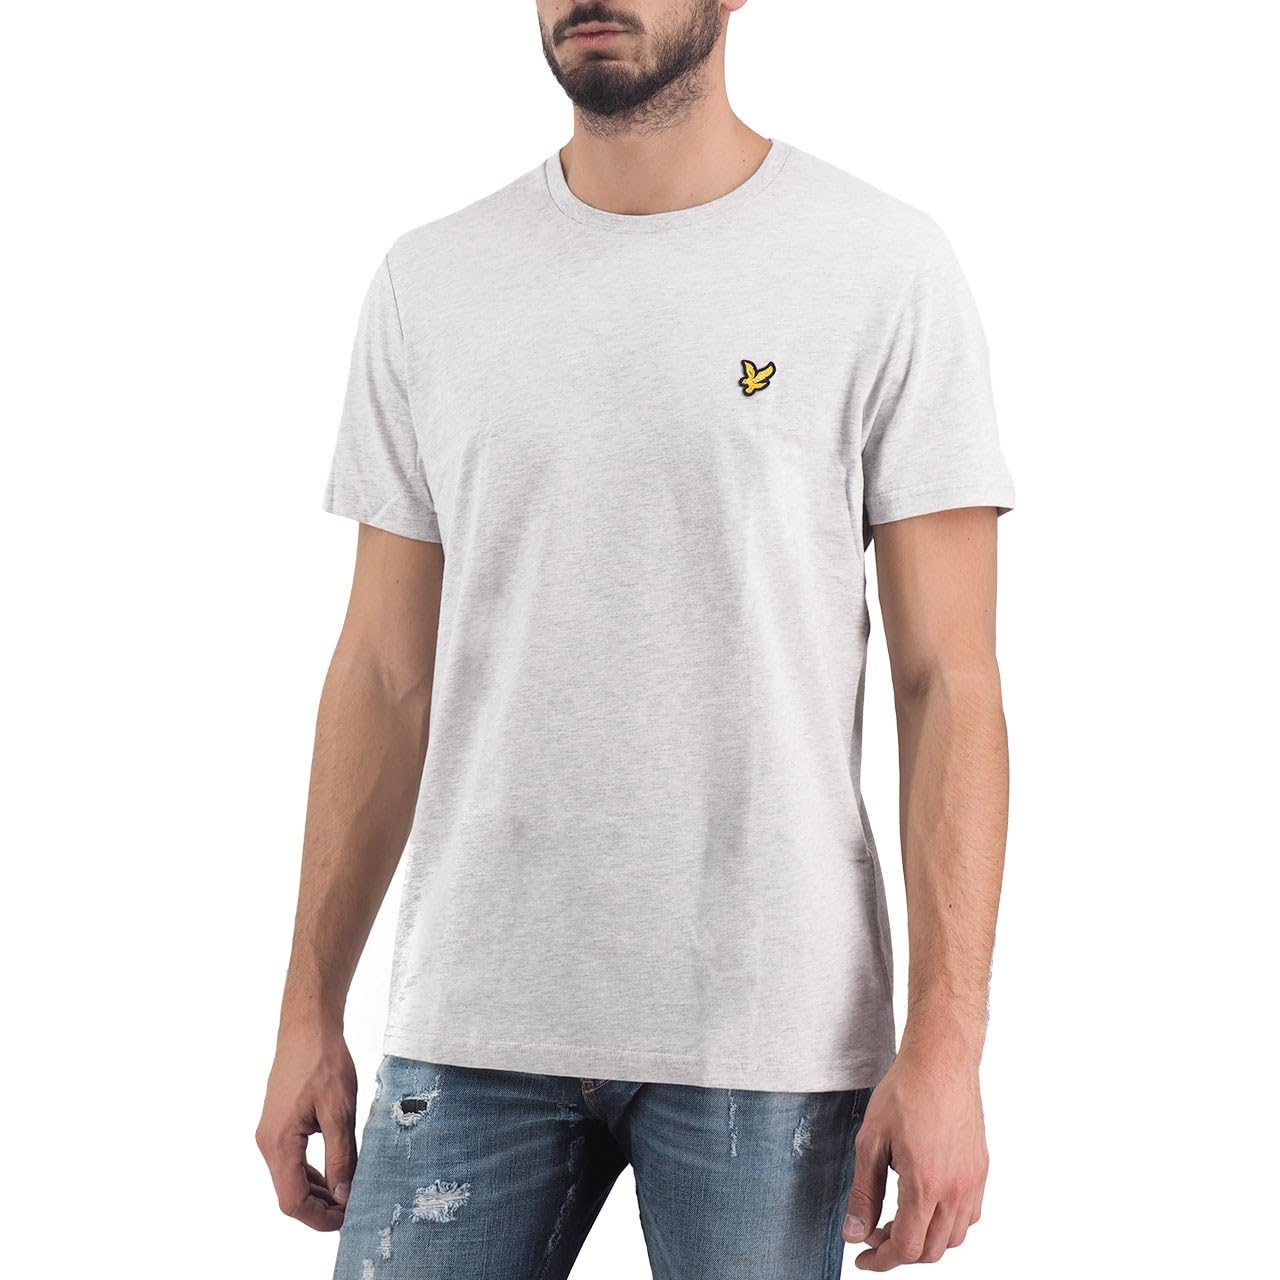 Lyle & Scott T-Shirt Herren | mit Rundhals-Ausschnitt und kurzen Ärmeln | mit goldenem Adler-Logo auf der Brust | XS - XXL